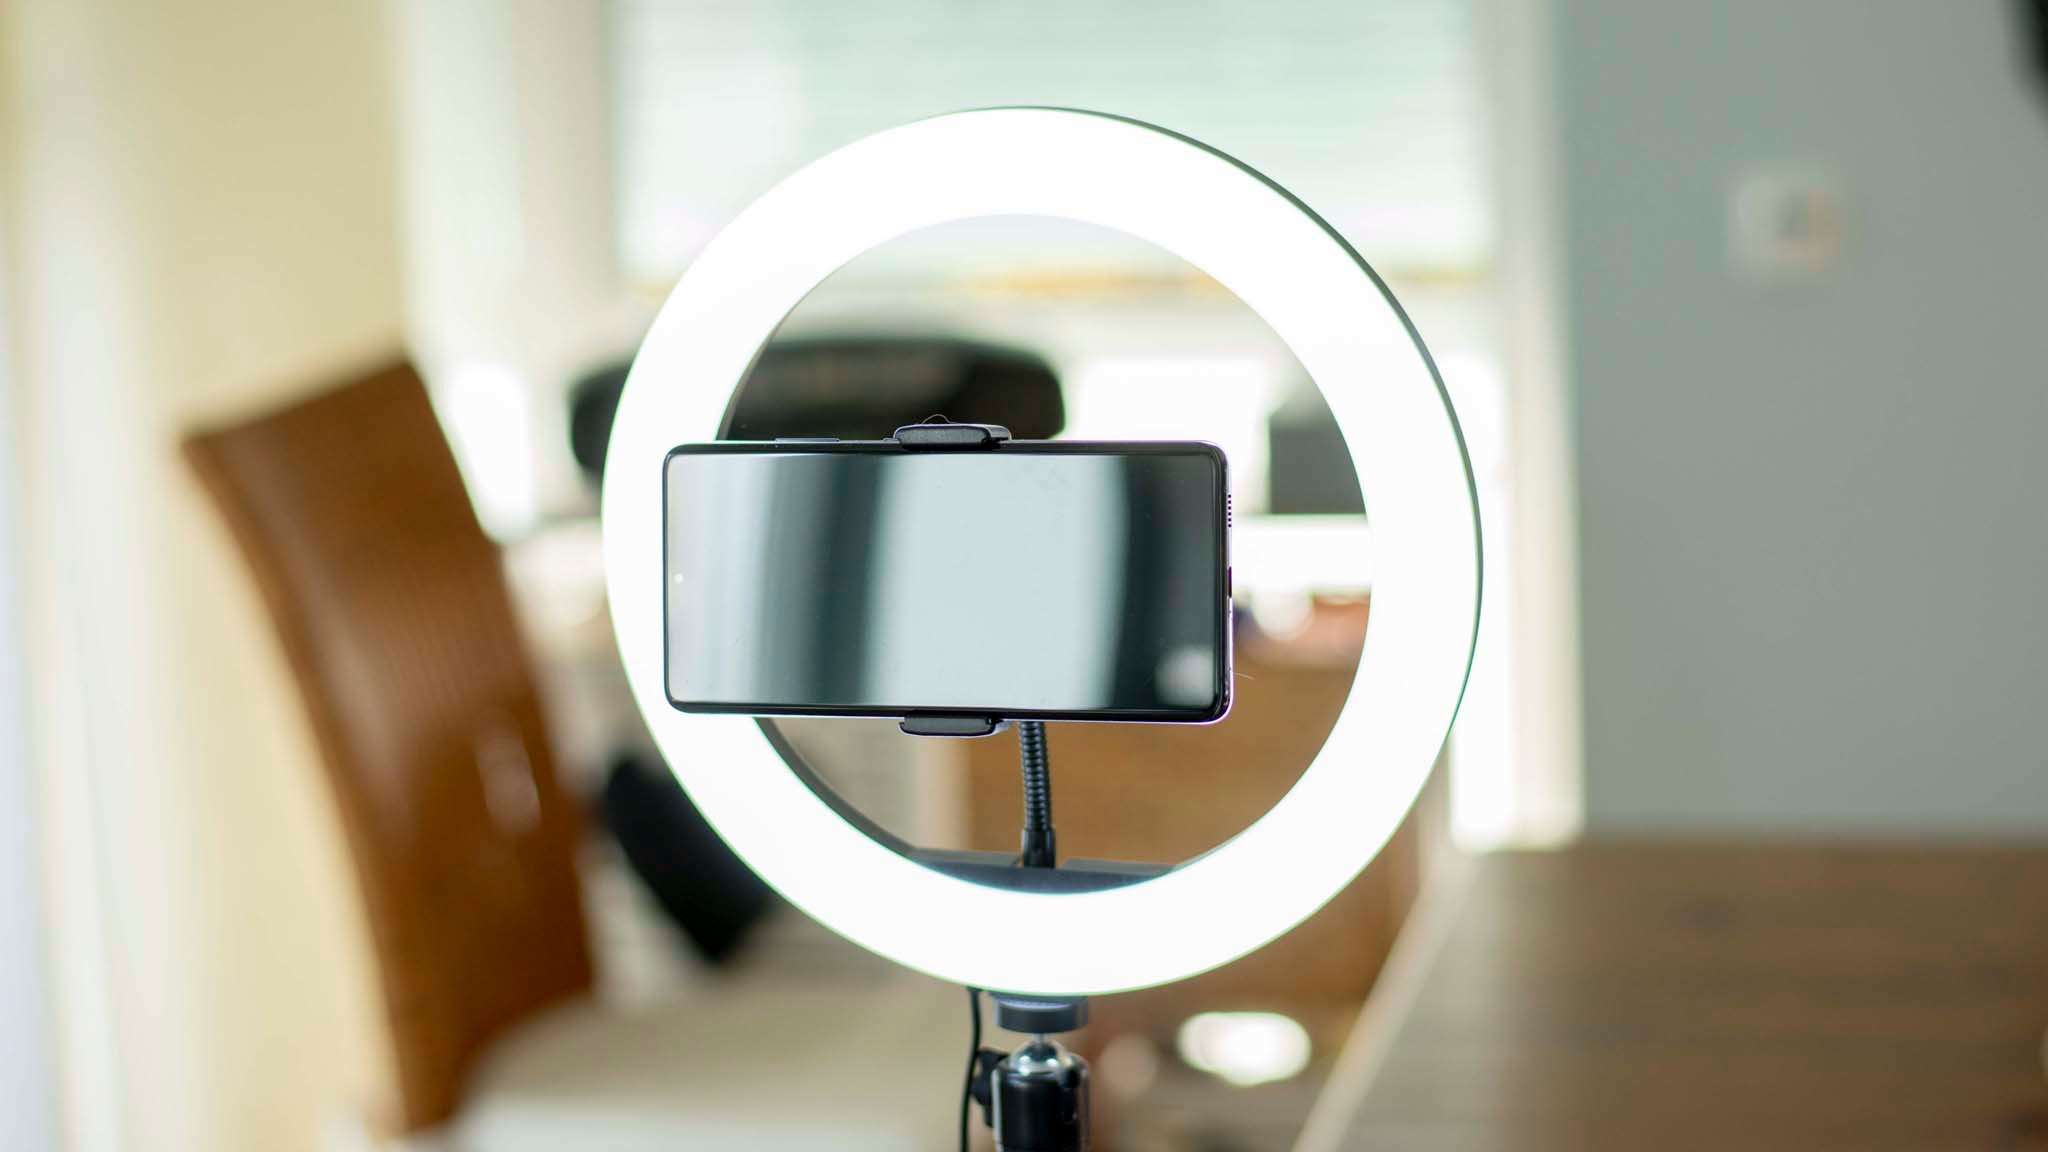 YELANGU Videokonferenz Licht mit Stativ Clip Selfie Licht mit 3 Beleuchtungsmodi&11 Helligkeiten für Video-Streaming/Make-Up/Selfies/Fotografie/Zoom-Meeting 360° Kugelkopf 4 Ringlicht Laptop